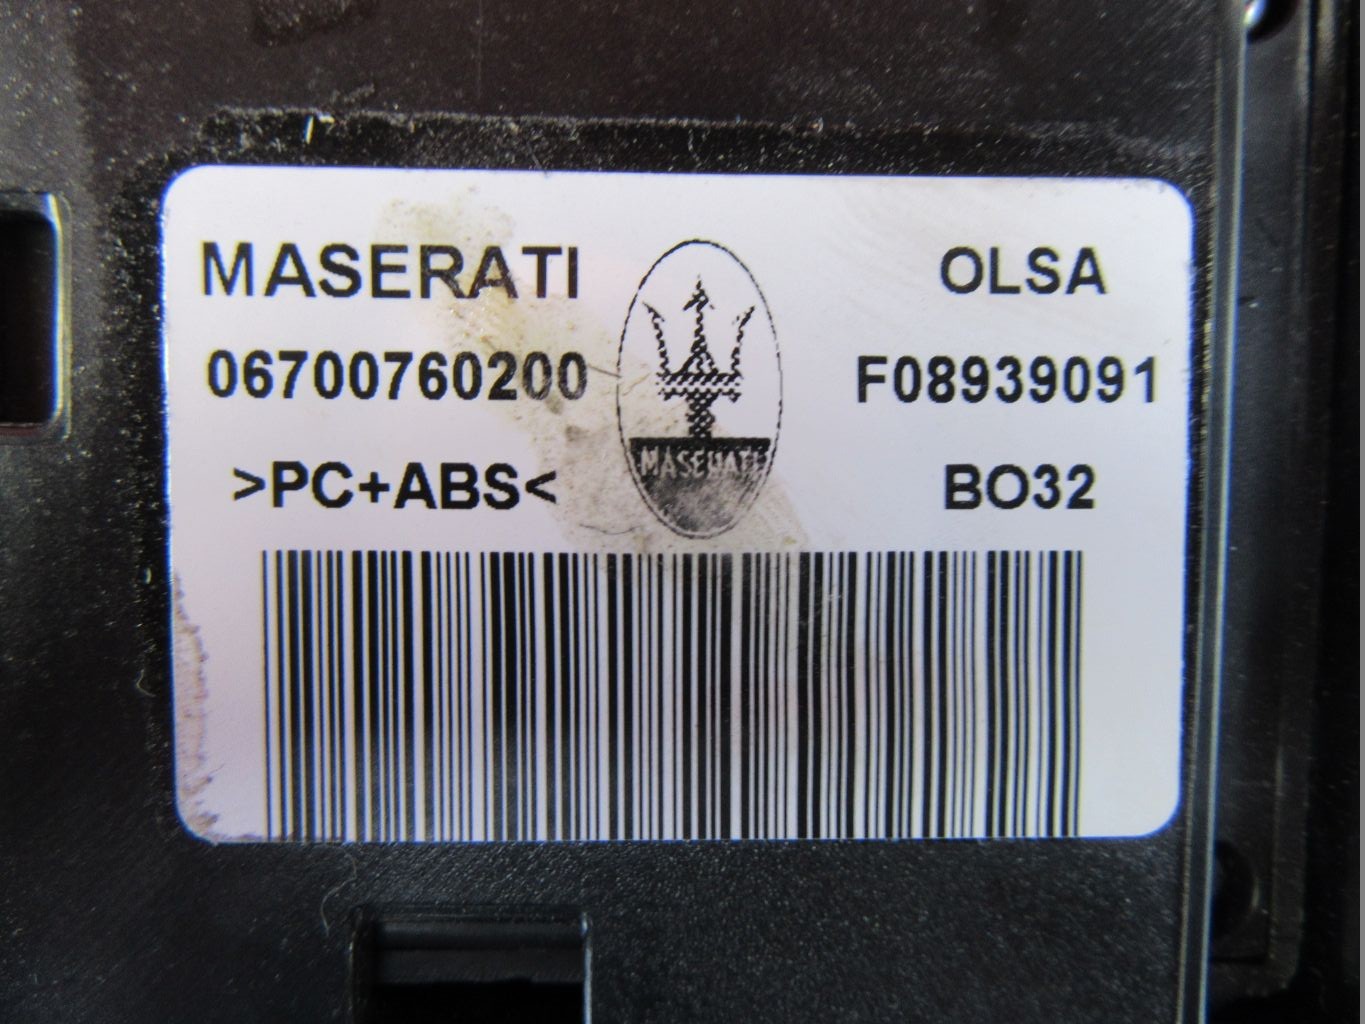 Maserati Ghibli Quattroporte front overhead dome light console #1012